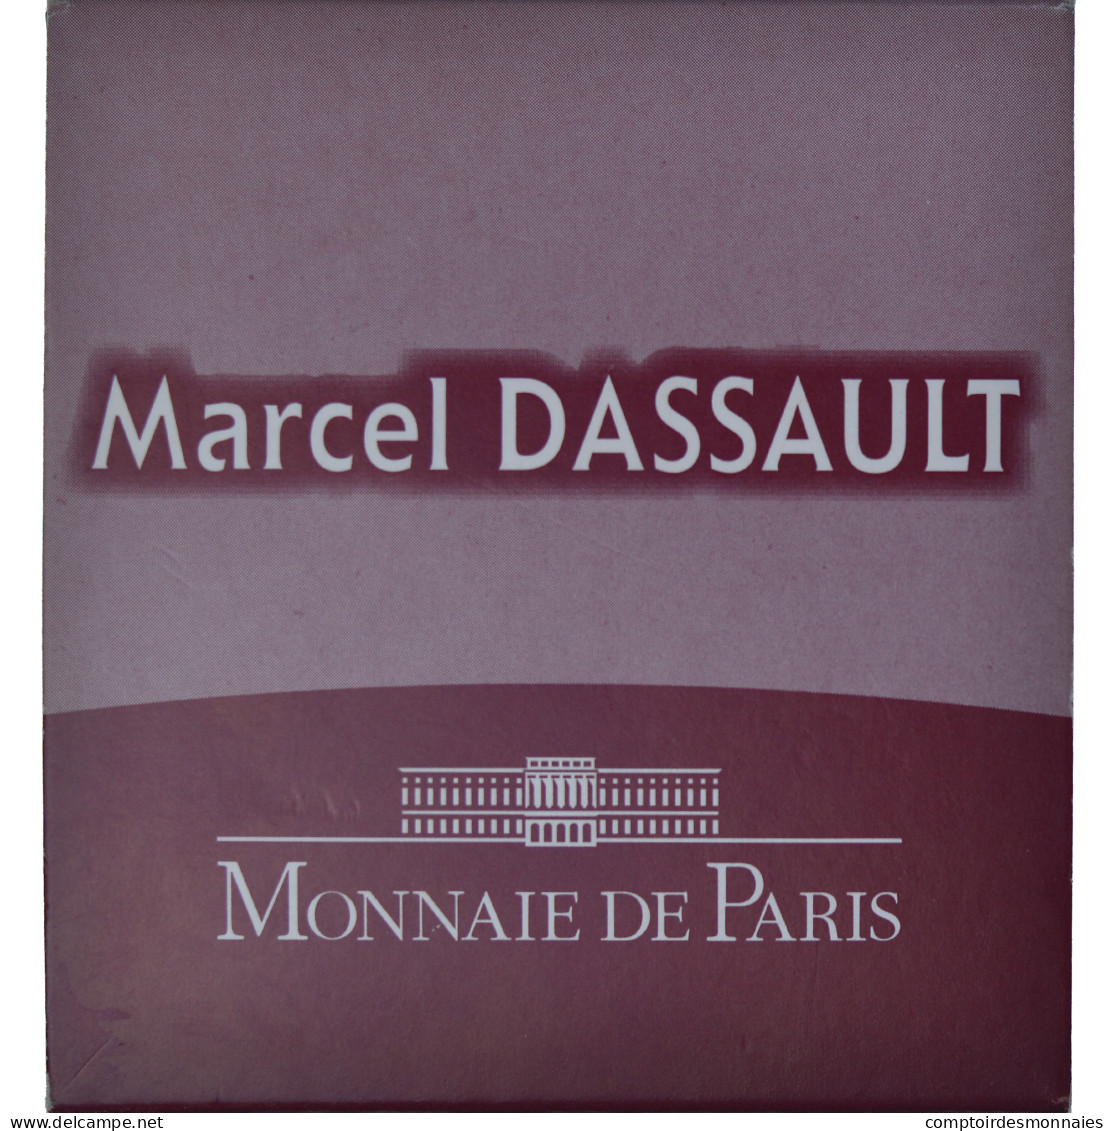 France, 10 Euro, Marcel Dassault, 2010, Monnaie De Paris, Proof / BE, FDC - France